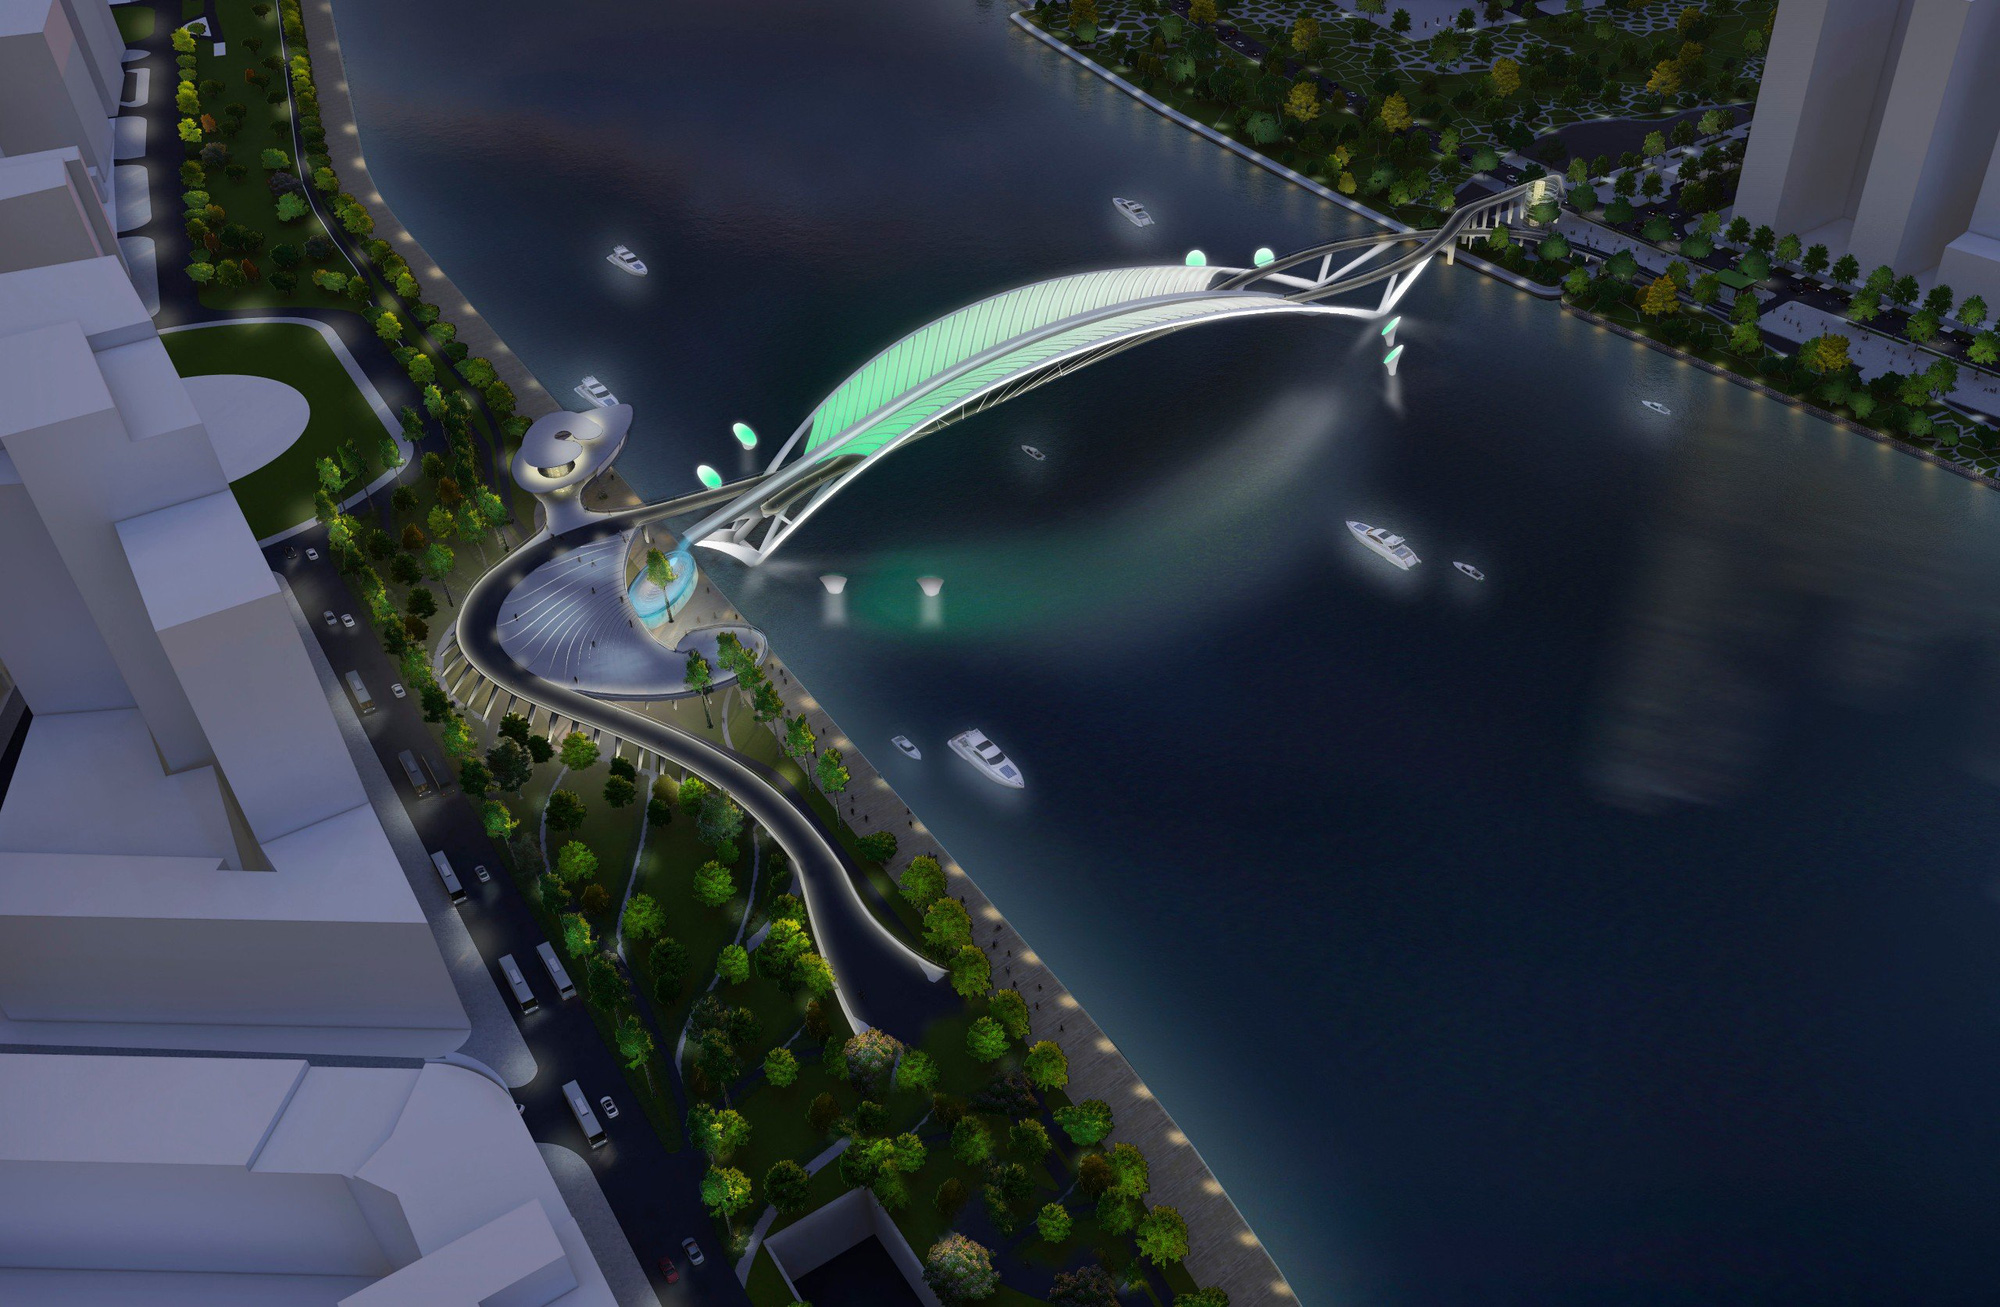 Hệ thống đèn trang trí mỹ thuật của cầu đi bộ qua sông Sài Gòn nhìn vào ban đêm.